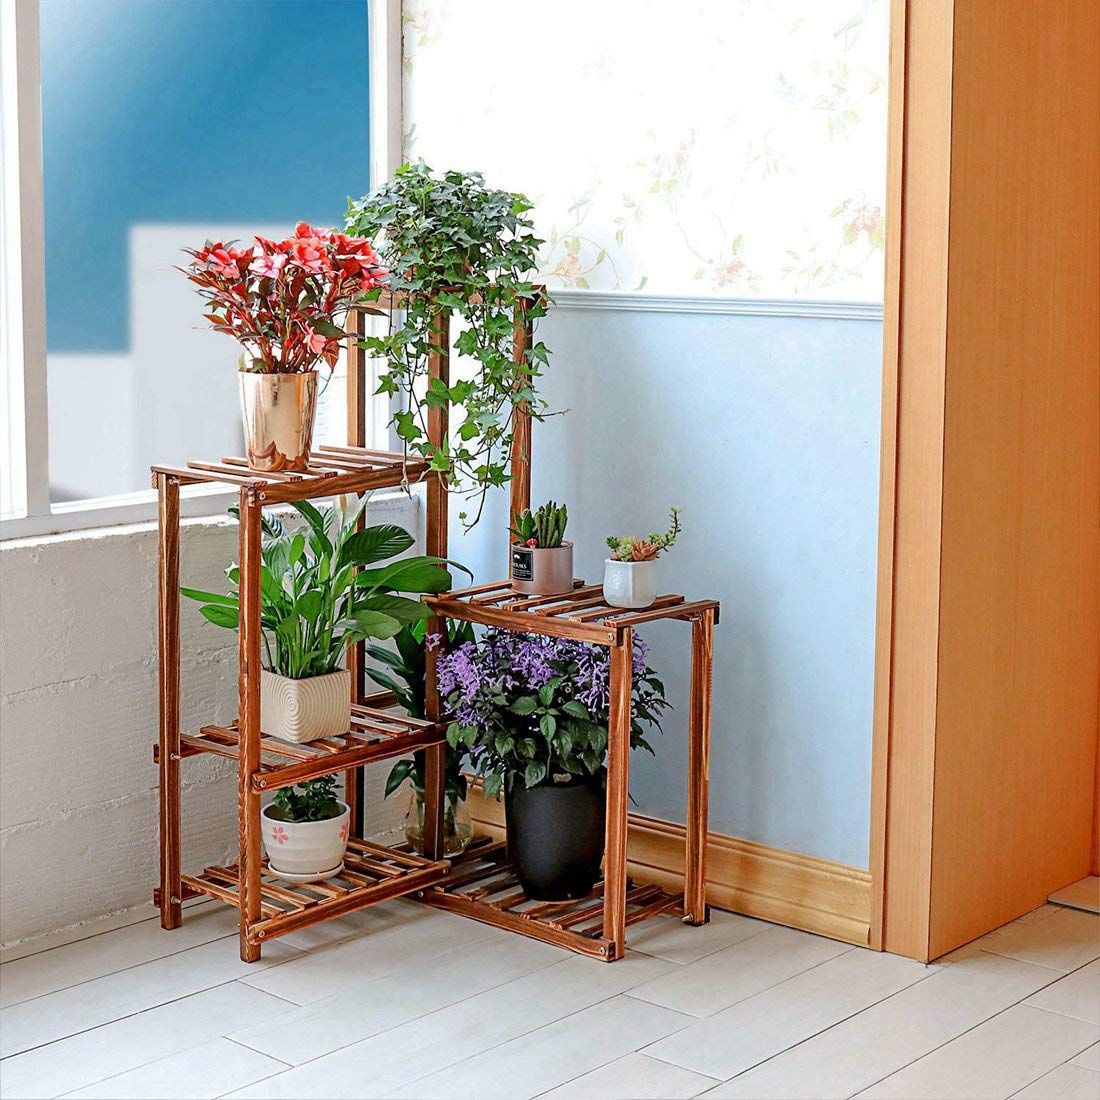 2 Tier Wood Plant Stands Flower Pot Shelf Rack Holder Indoor Outdoor for Corner